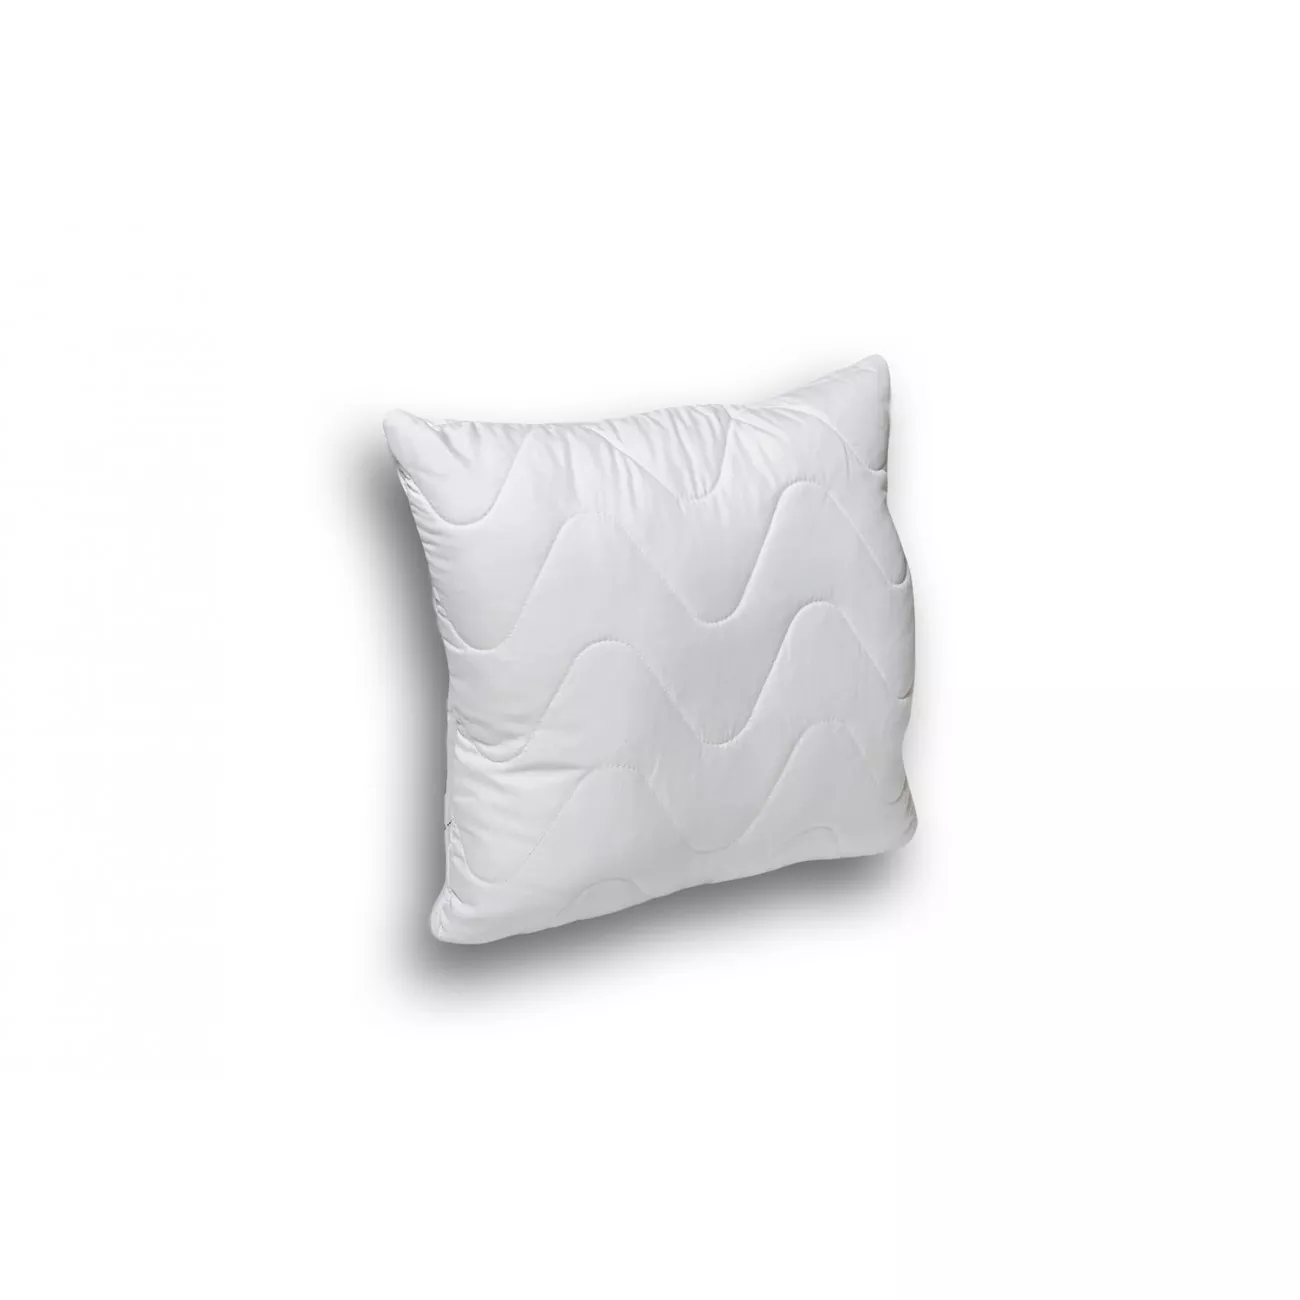 Biała poduszka antyalergiczna HIT 50x50 do spania z mikrofibry dla alergików hipoalergiczna - 1